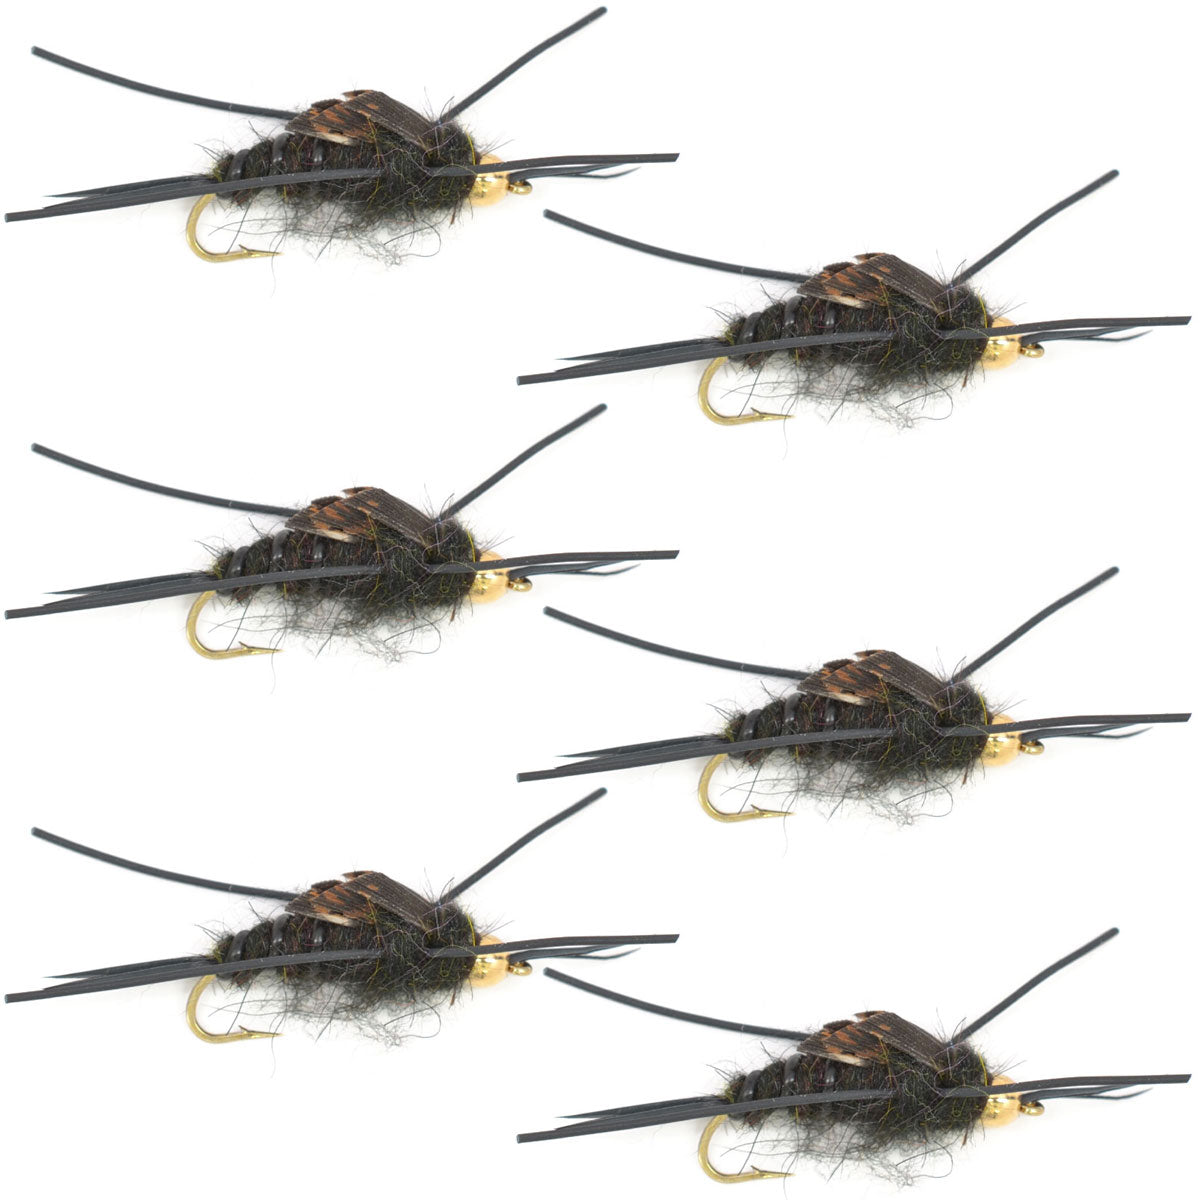 Mosca de piedra negra de Kaufmann con cuentas de tungsteno con patas de goma, mosca húmeda Stonefly, gancho para 6 moscas, tamaño 4